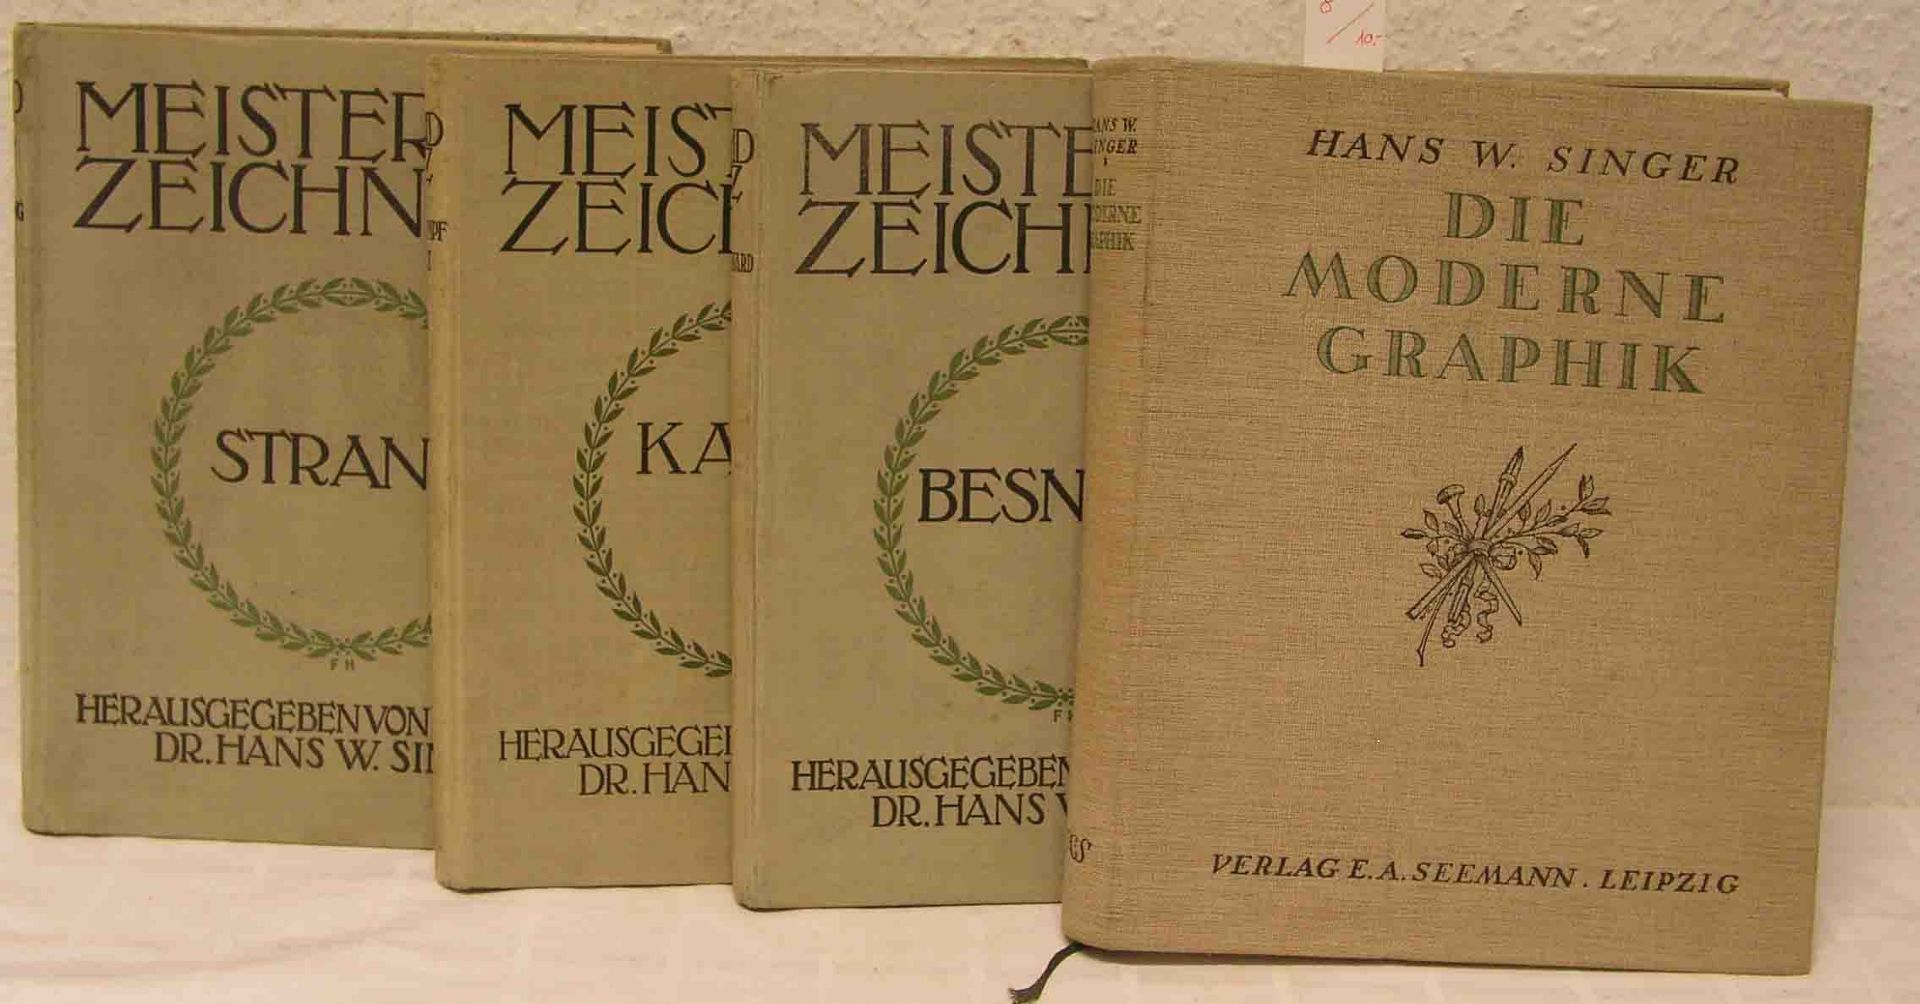 Kunst. Vier Bücher. Dabei: drei Bände "Meister der Zeichnung", "William Strang", "AlbertBesnard" und